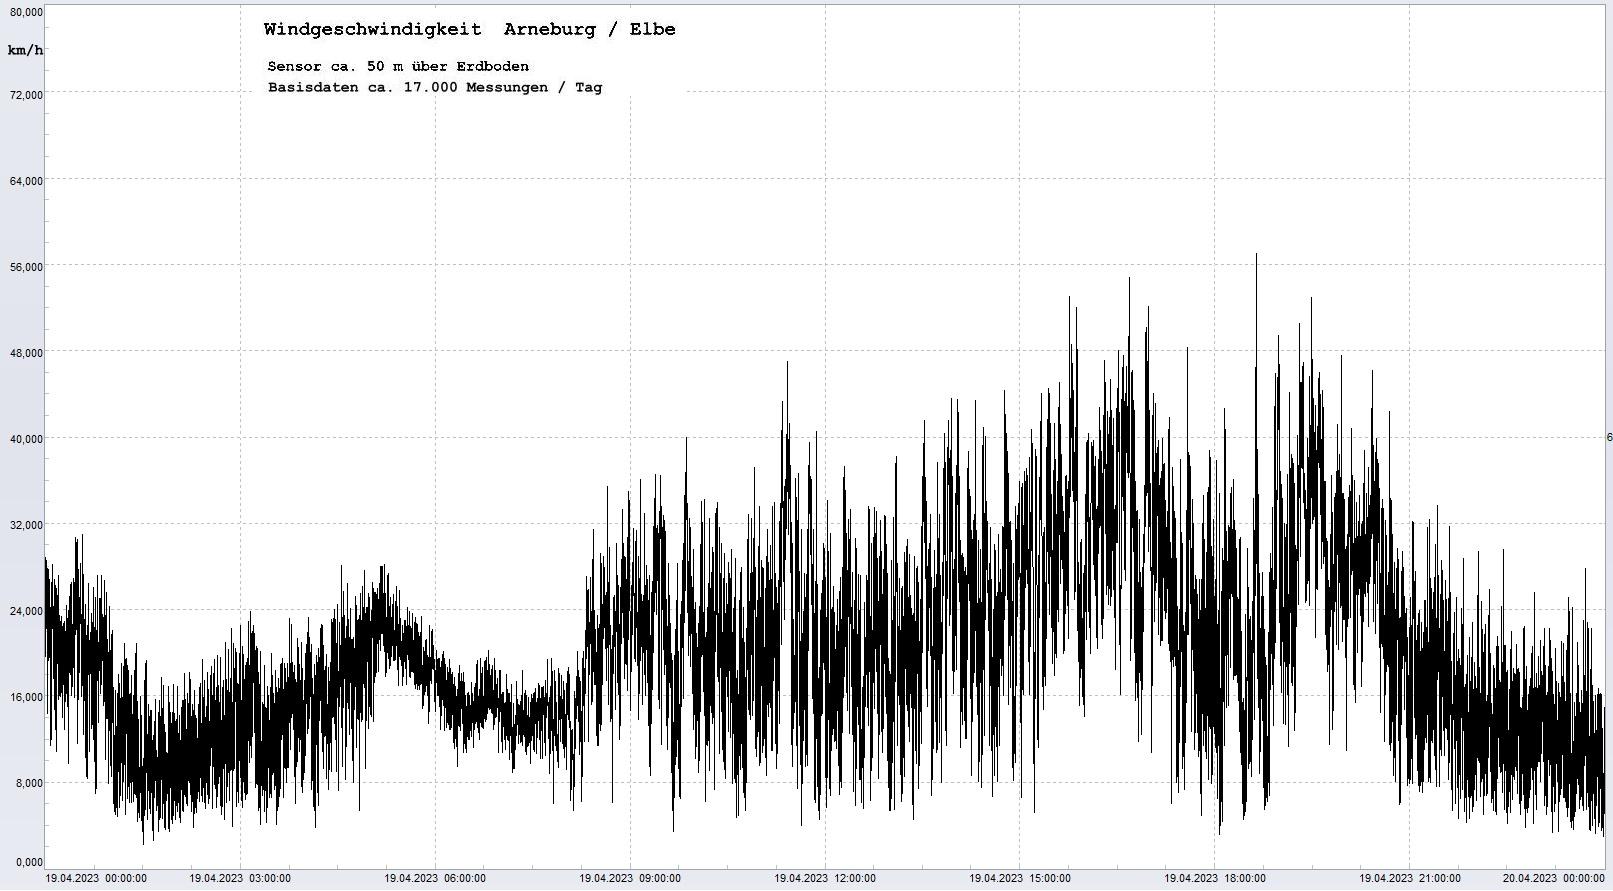 Arneburg Tages-Diagramm Winddaten, 19.04.2023
  Diagramm, Sensor auf Gebude, ca. 50 m ber Erdboden, Basis: 5s-Aufzeichnung